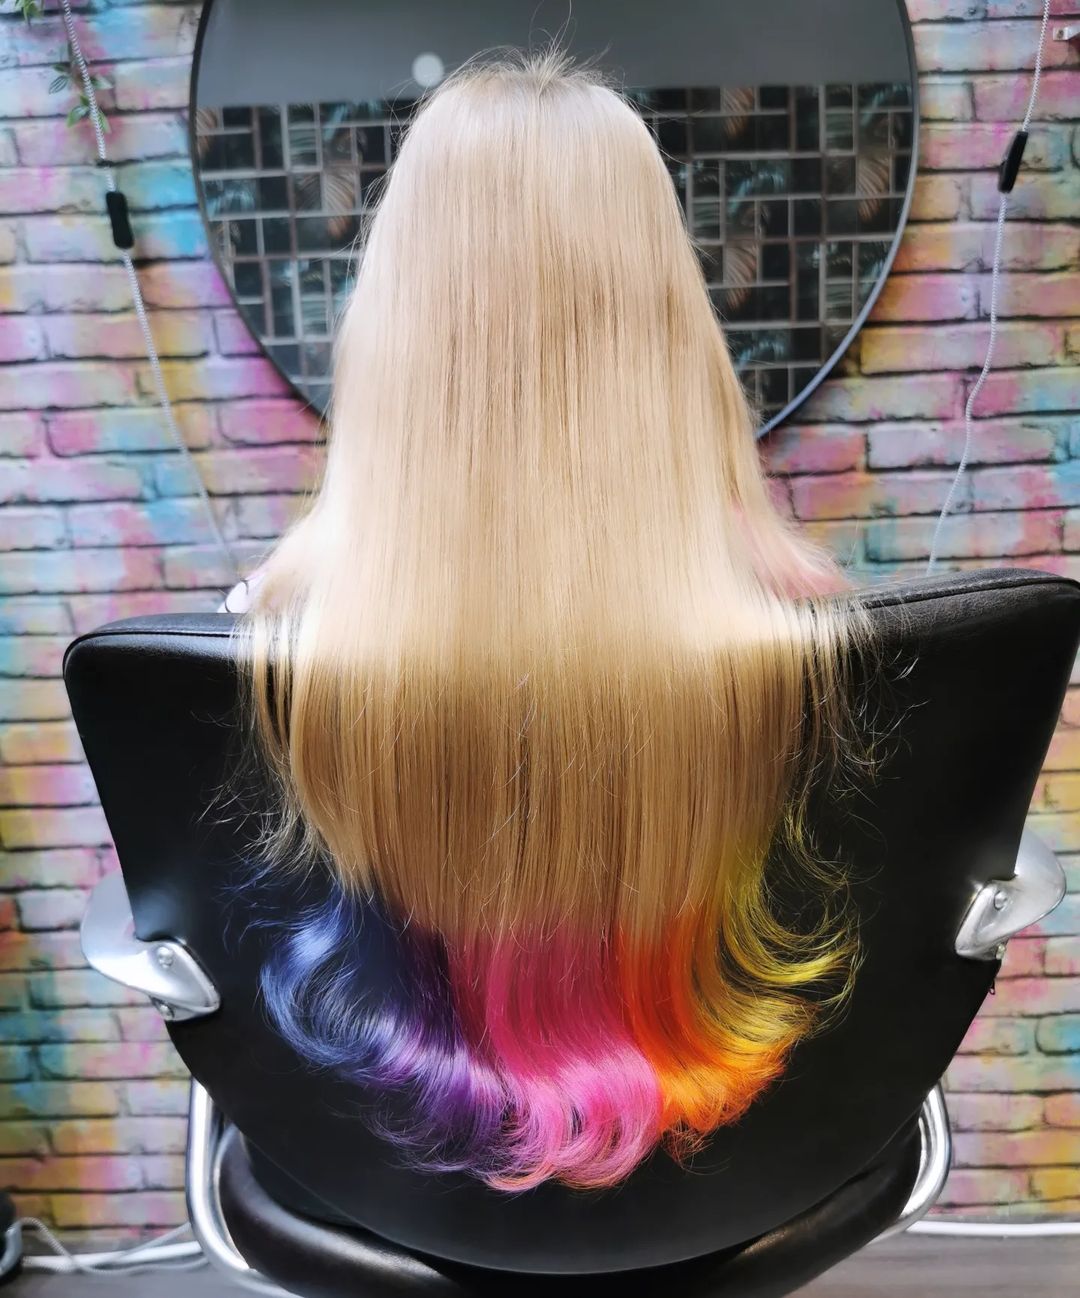 cabelo louro comprido com pontas arco-íris